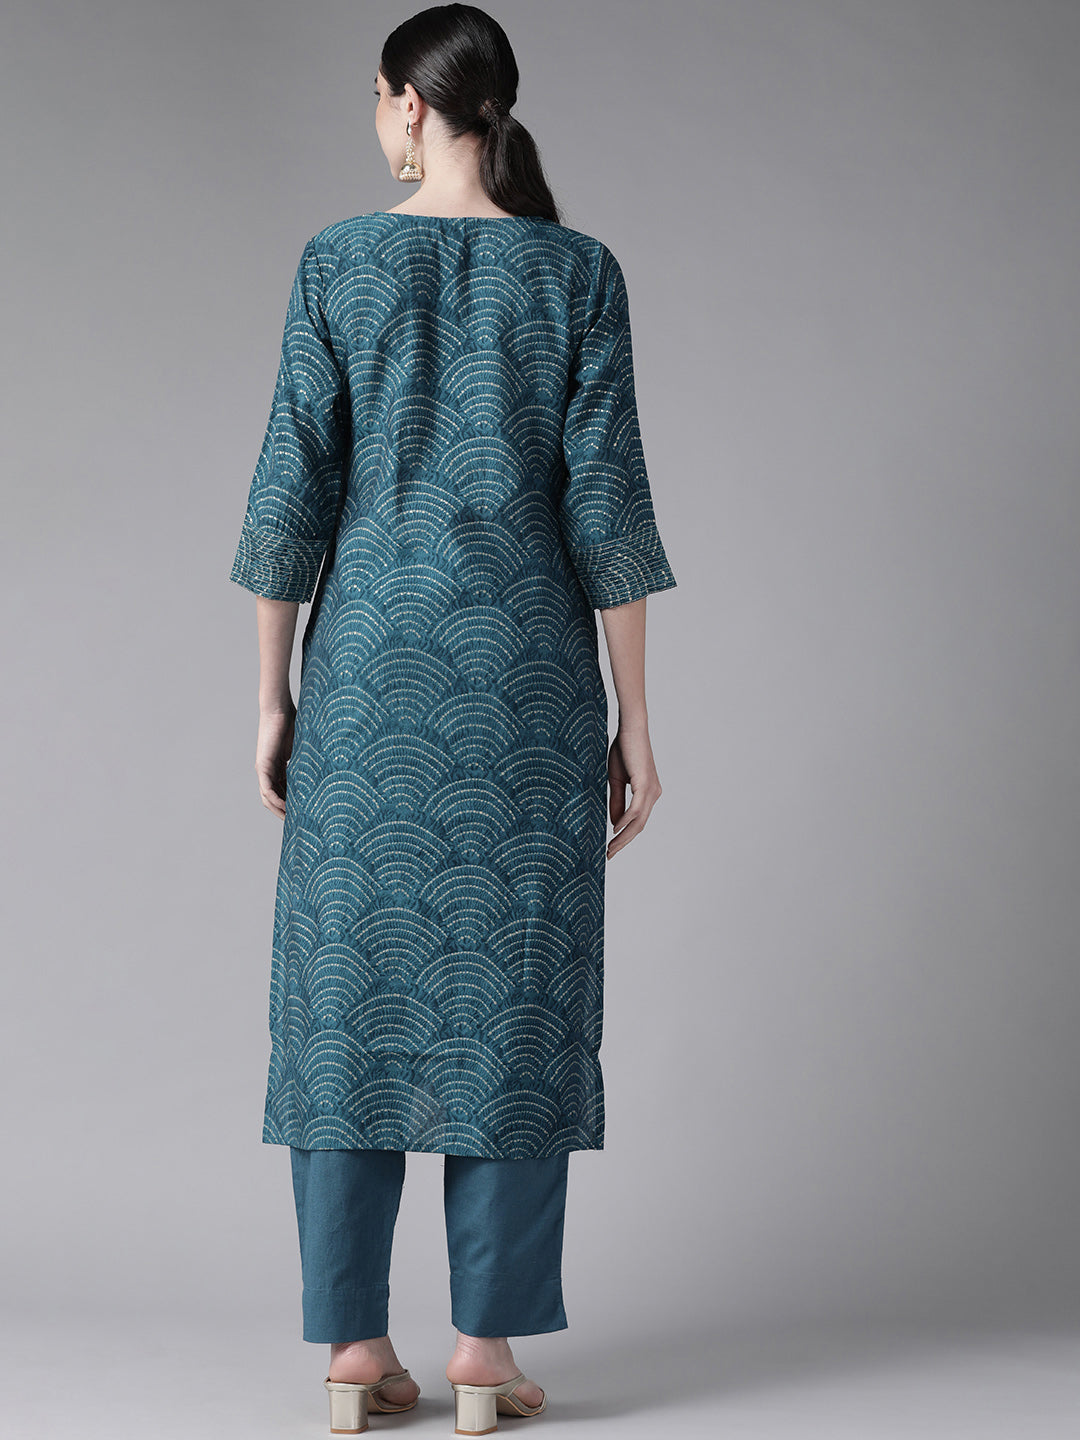 Ishin Women's Art Silk Teal Embroidered A-Line Kurta Trouser Set